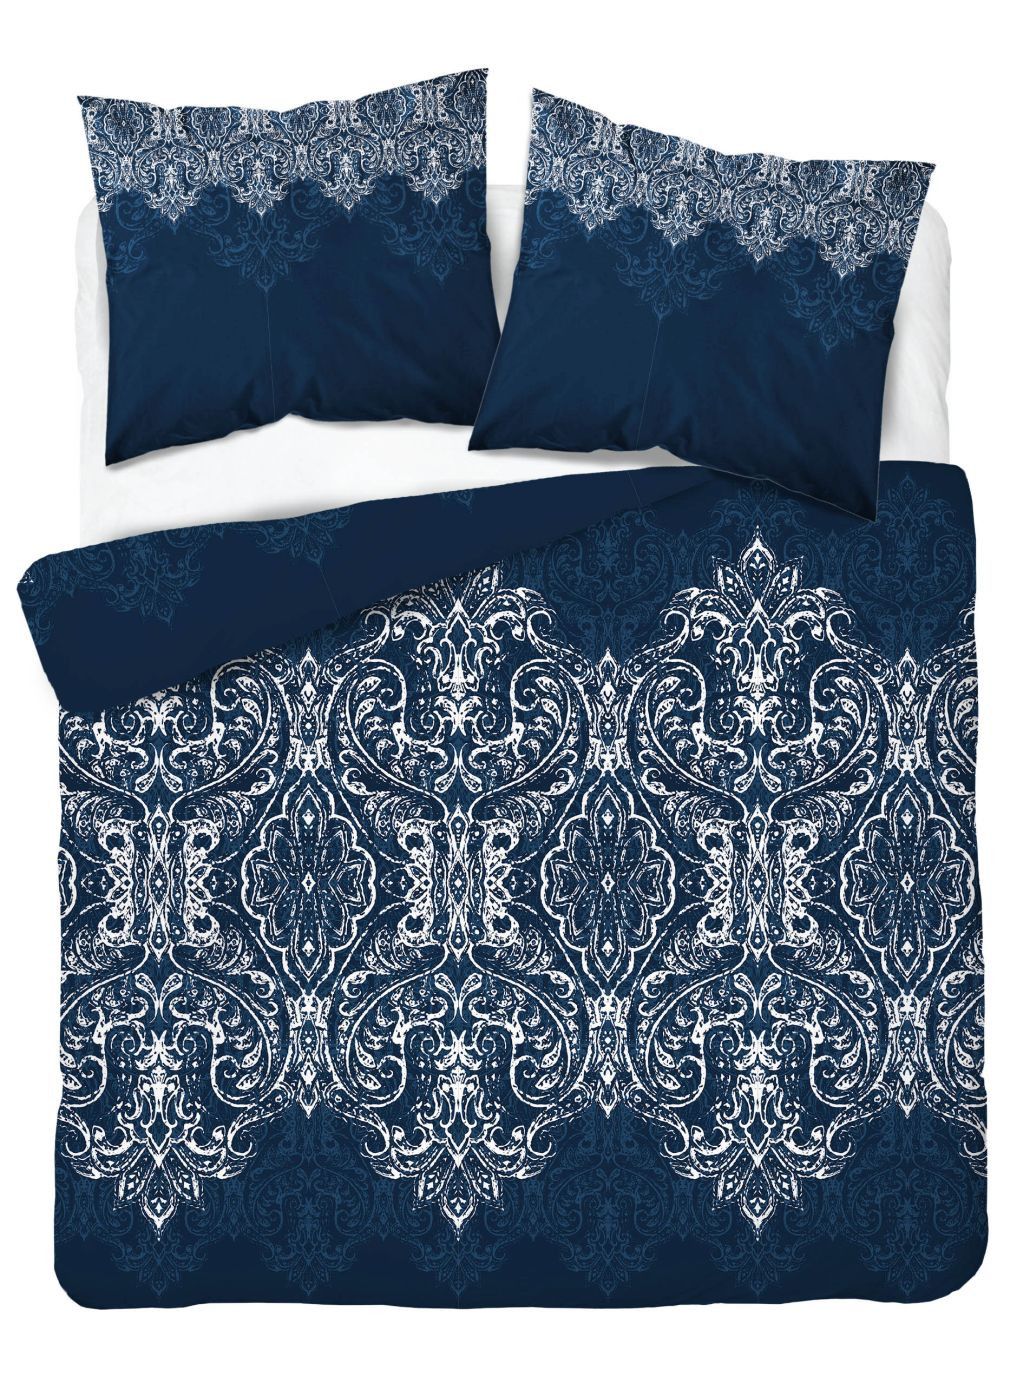 DomTextilu Dokonalé postelné bavlnené obliečky v modrej farbe s krásnym orientálnym vzorom v bielej farbe 51842-230686